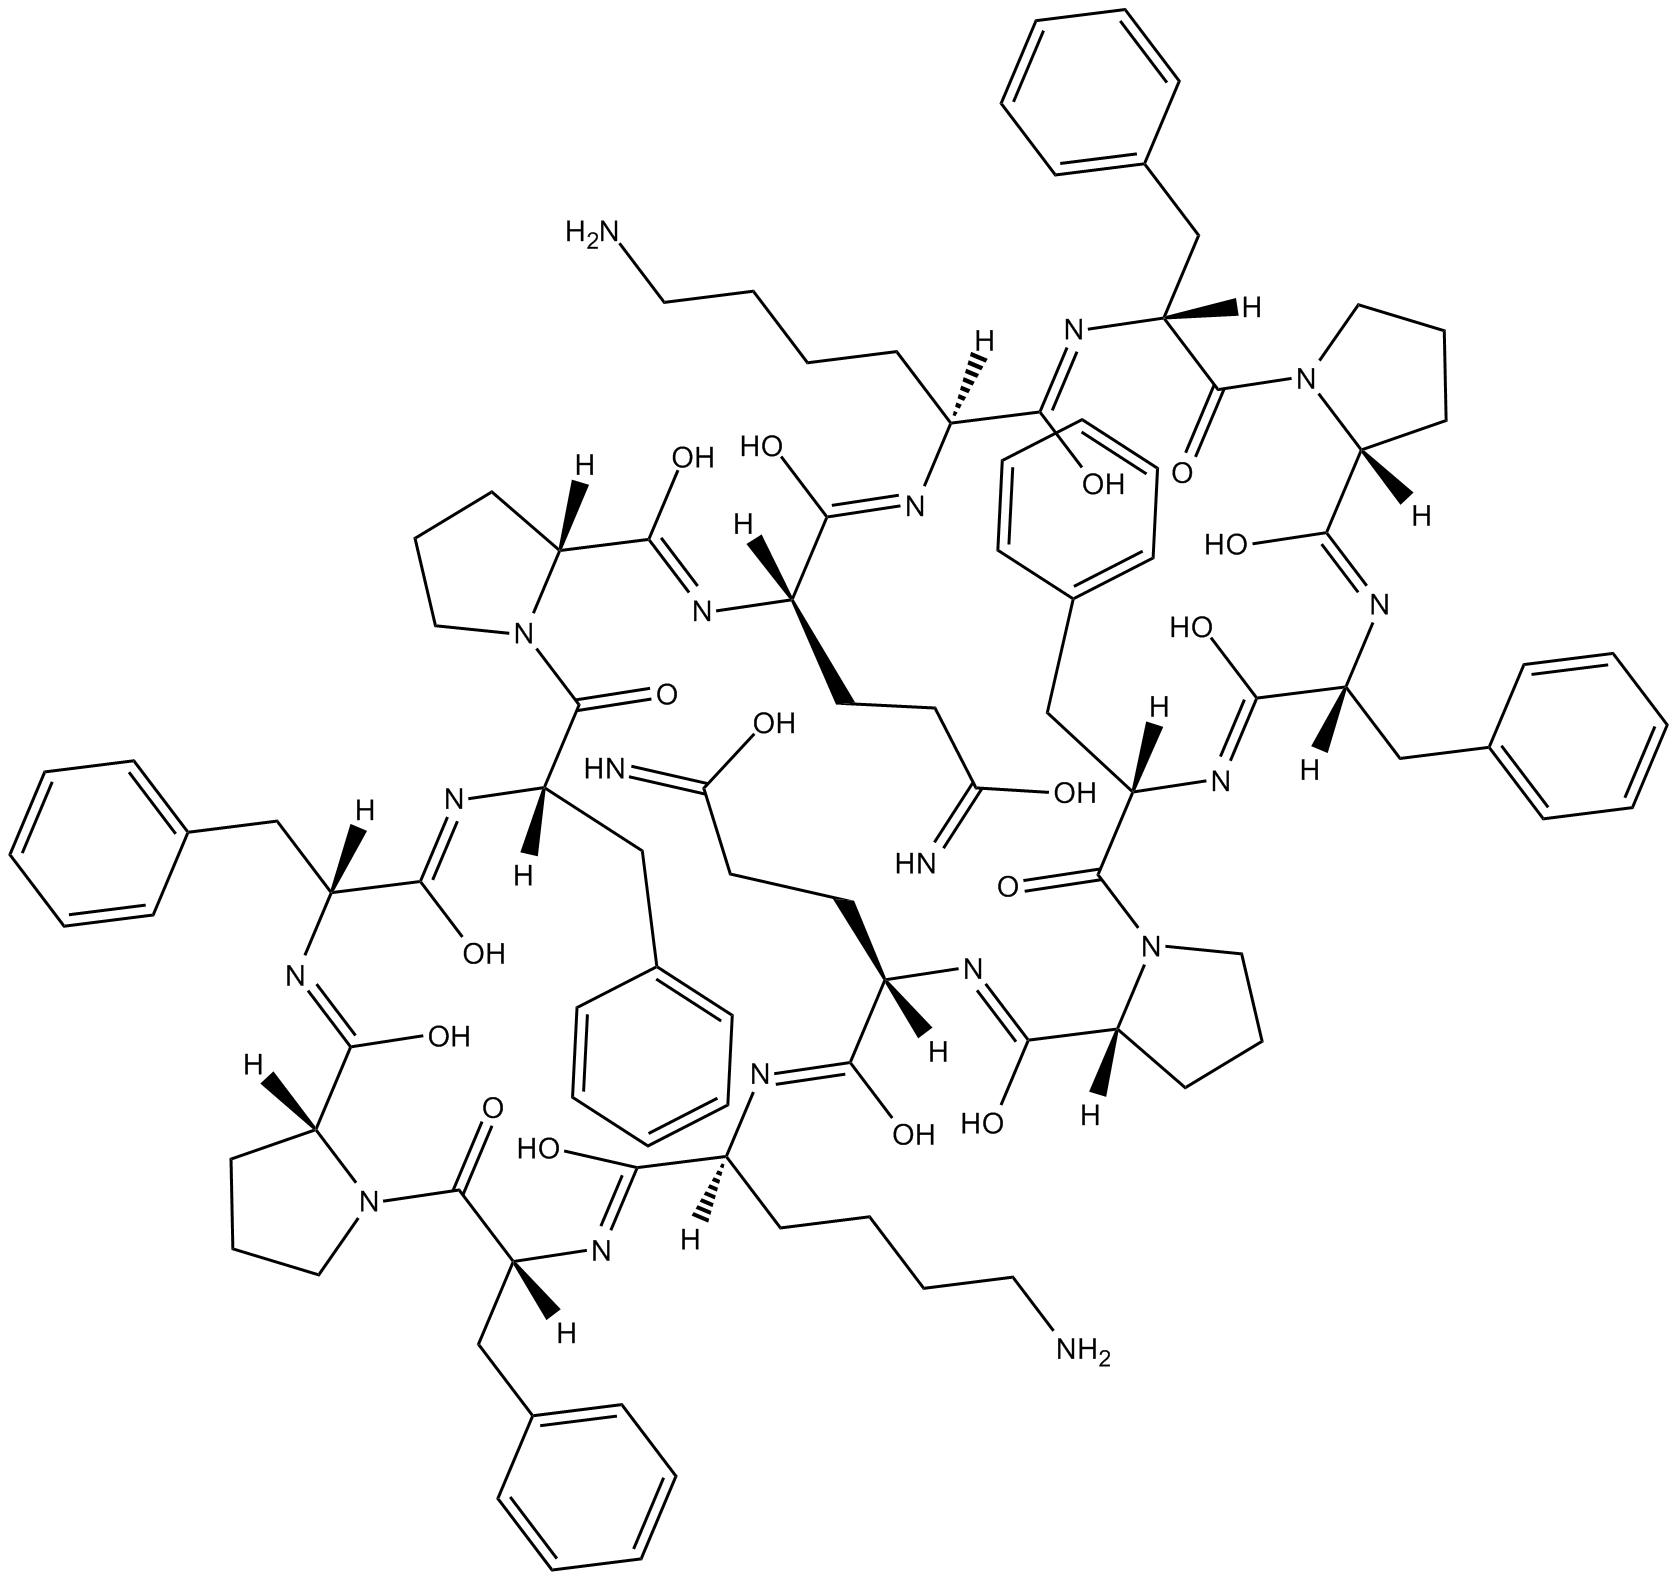 187-1, N-WASP inhibitor التركيب الكيميائي